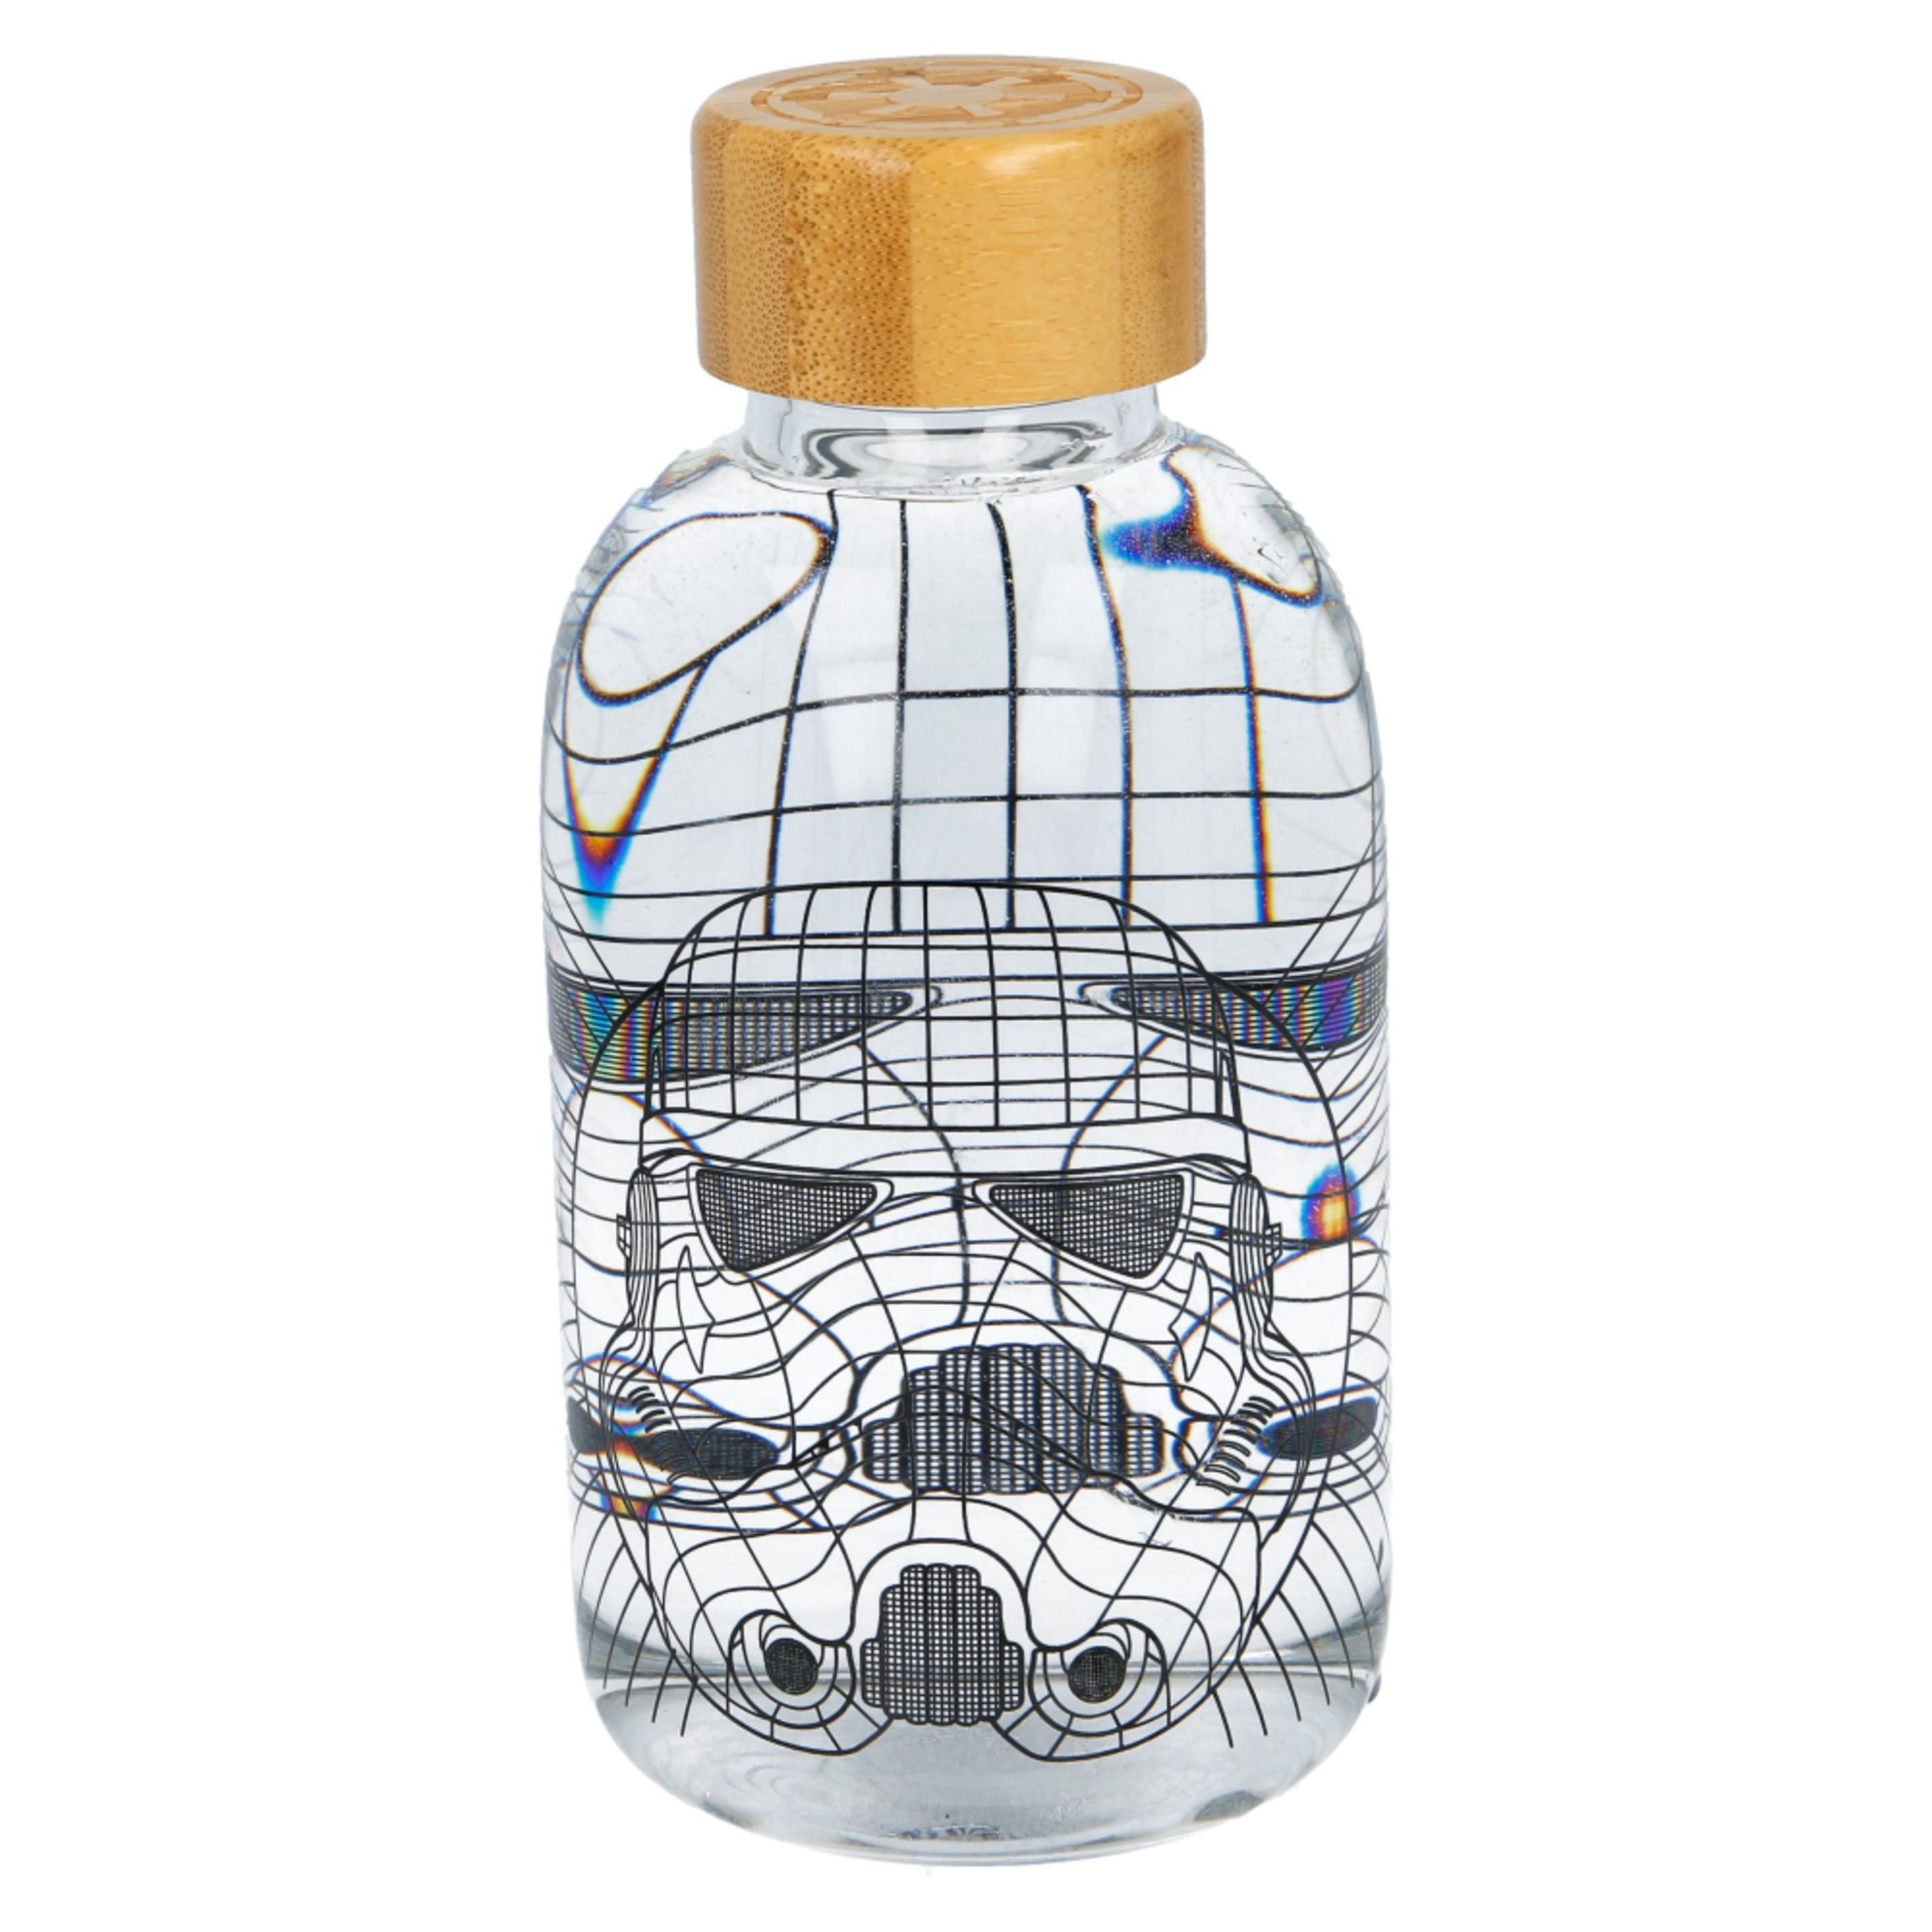 Botella Star Wars 63640 - transparente - 